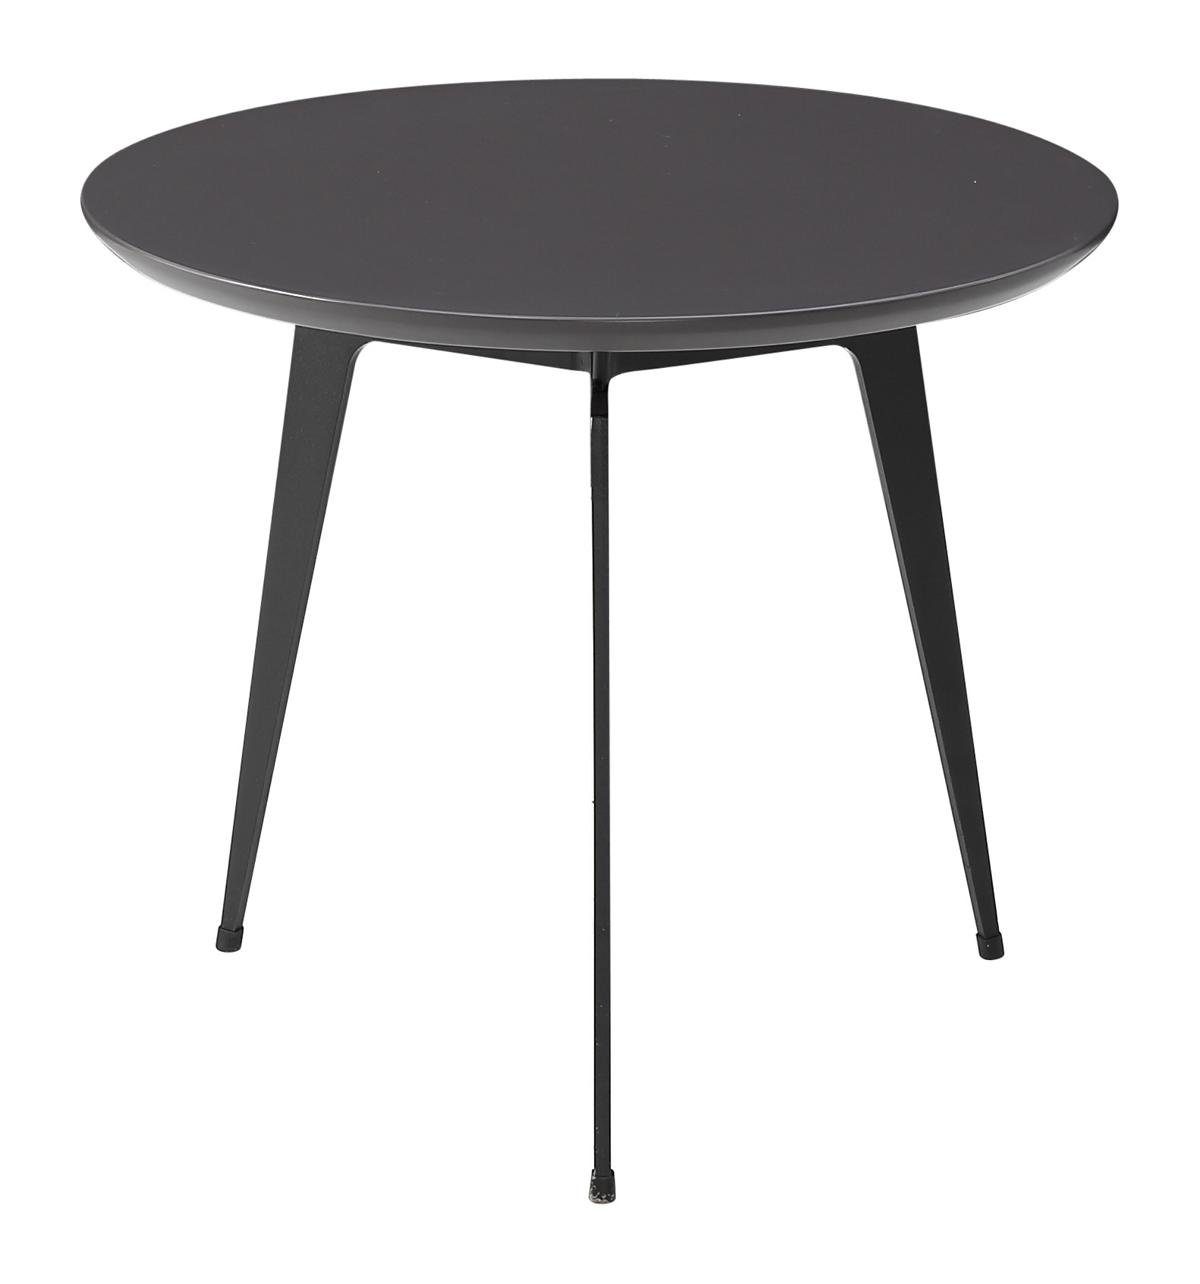 Design Tisch Couchtisch Tisch Runder Jafra Wohnzimmer Tische Couchtisch, Runde Sofa Beistelltisch